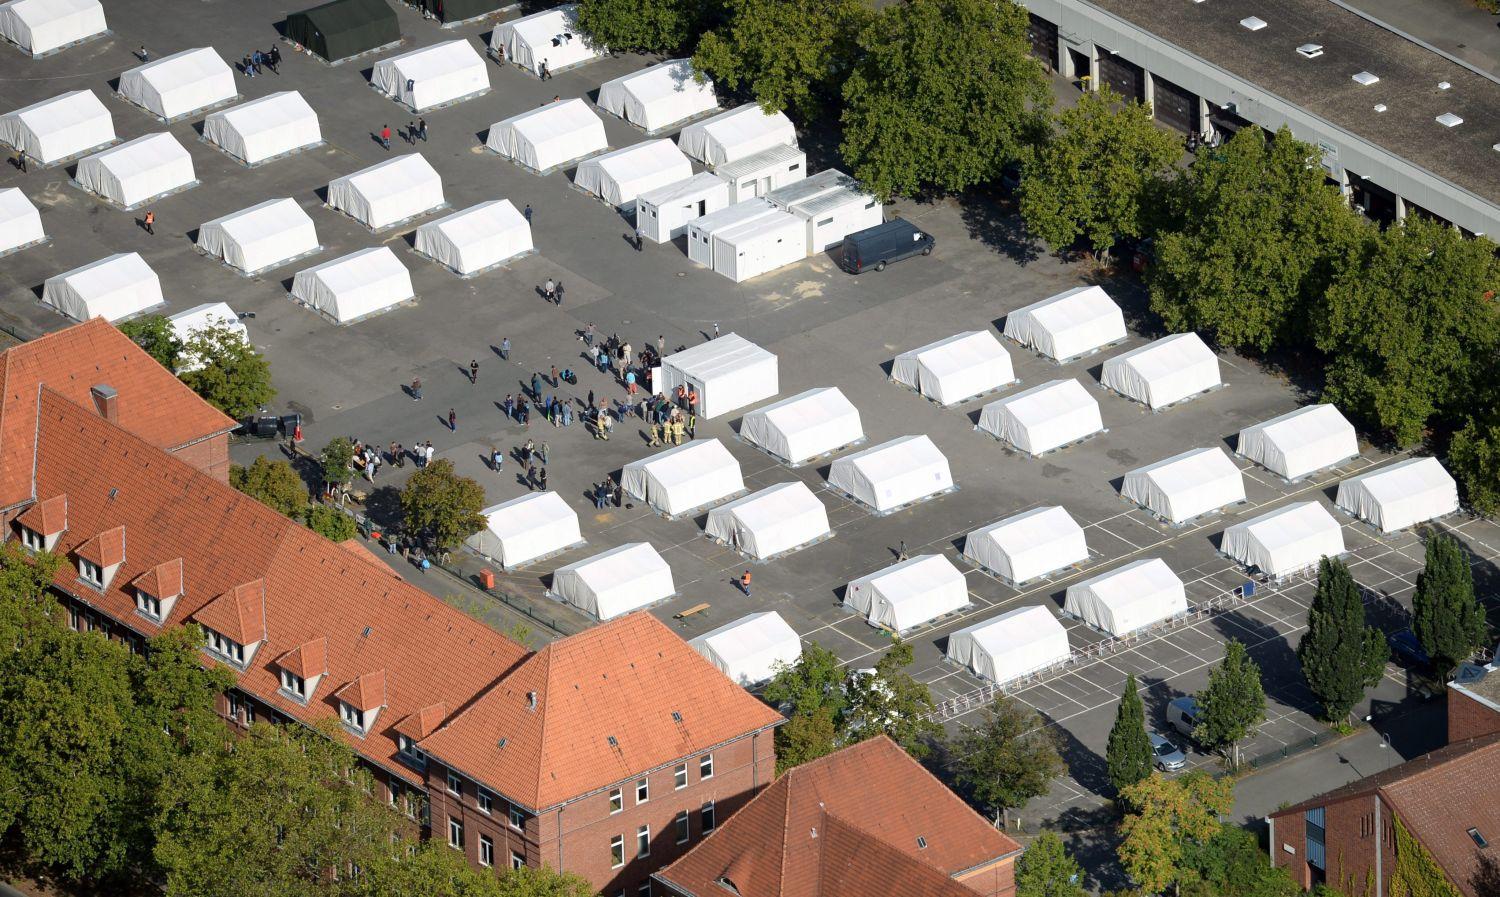 Migránsok befogadására kialakított sátortábor Berlinben. A 600 fő elszállásolására képes központba az elmúlt napokban több mint 300 menedékkérő érkezett